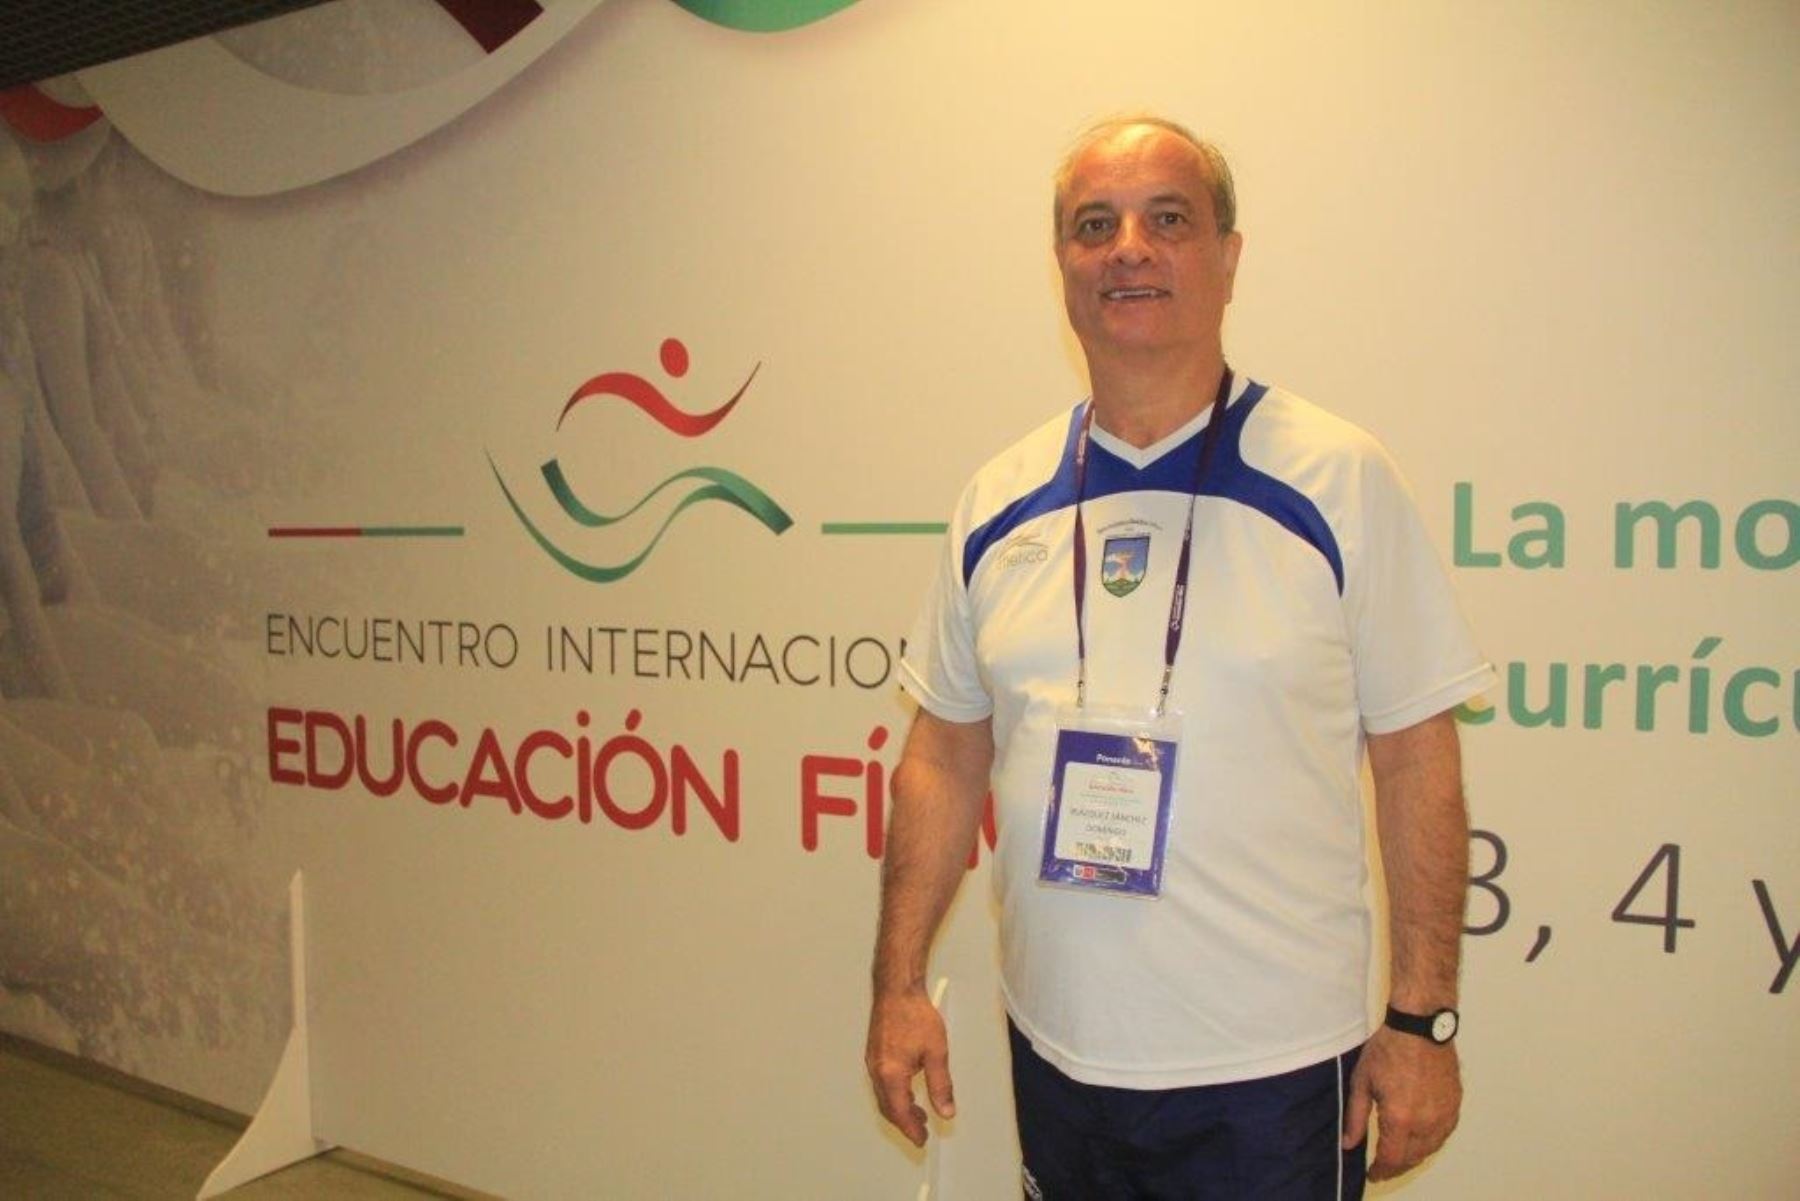 Domingo Blázquez Sánchez es catedrático de Educación Física del Instituto Nacional de Educación Física de Barcelona, y ha sido invitado al Seminario Internacional sobre Educación Física que organiza el Minedu.